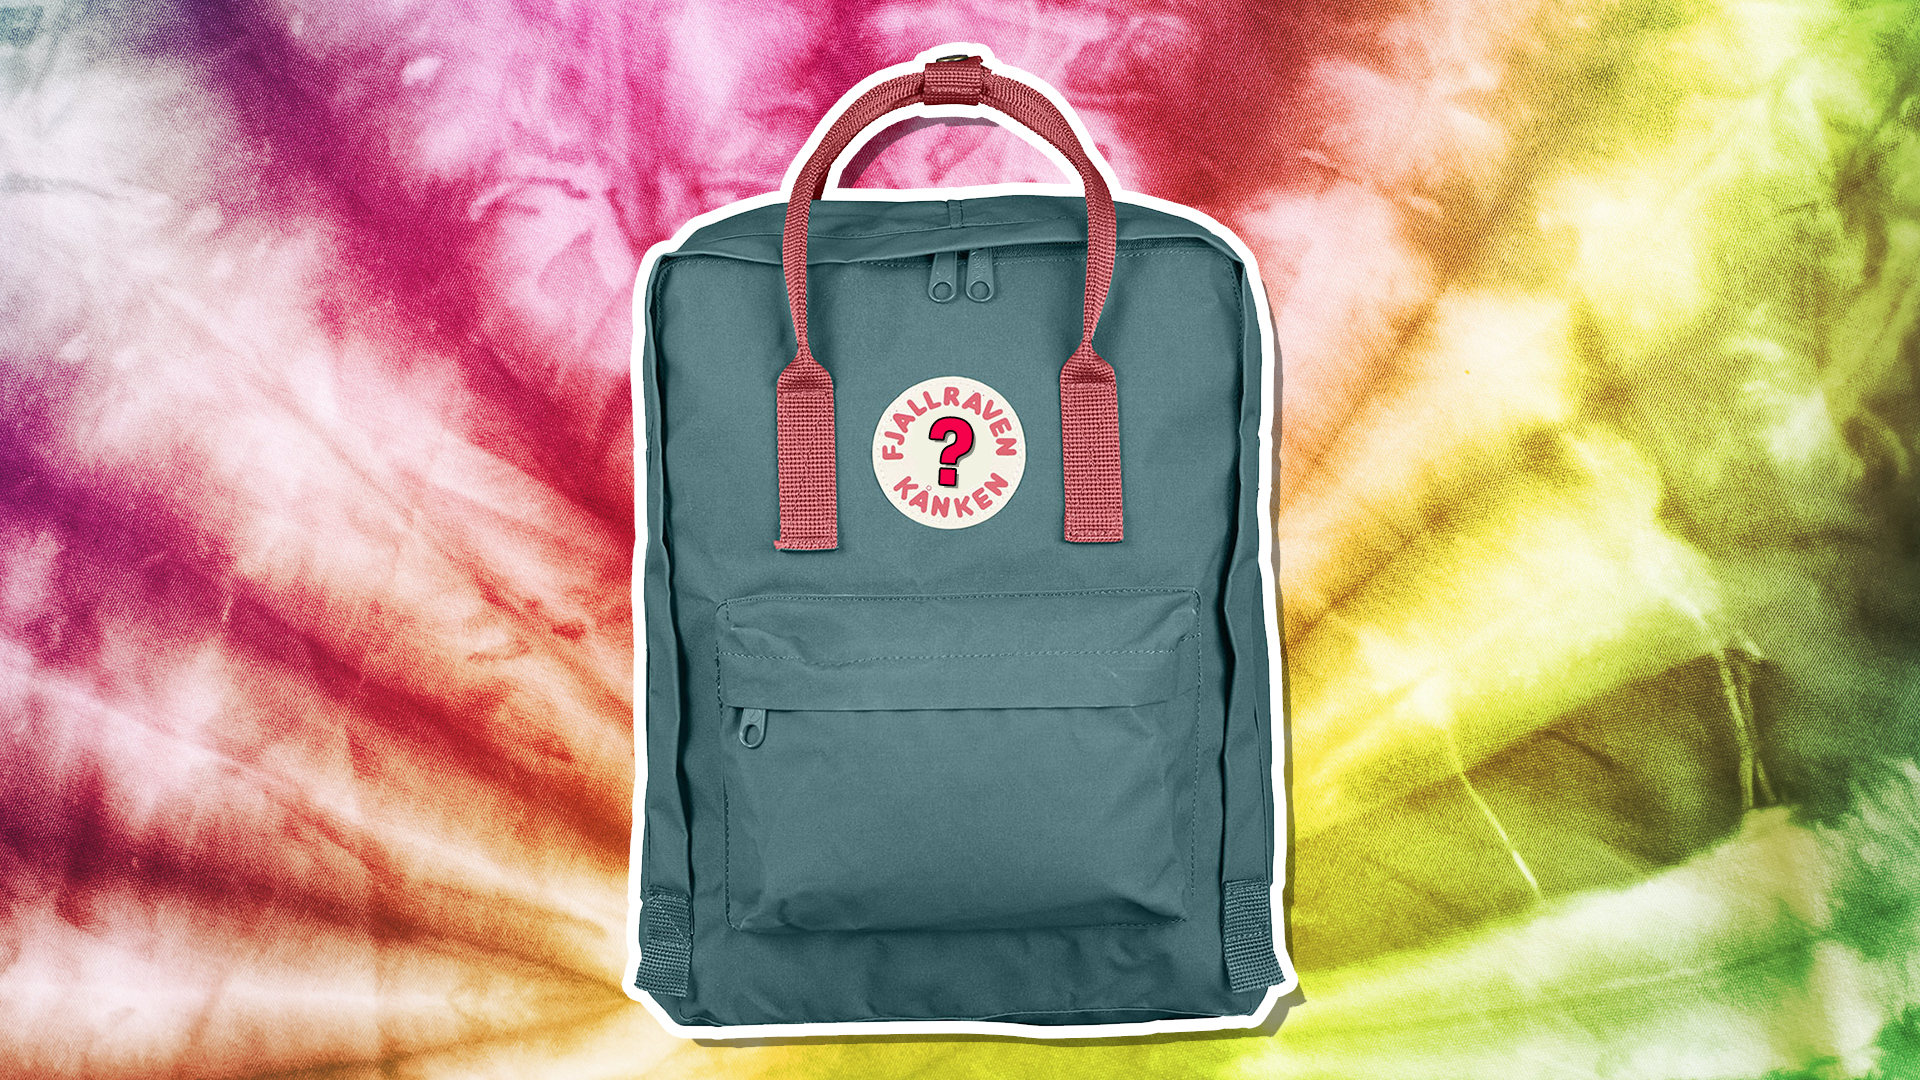 A Fjällräven backpack